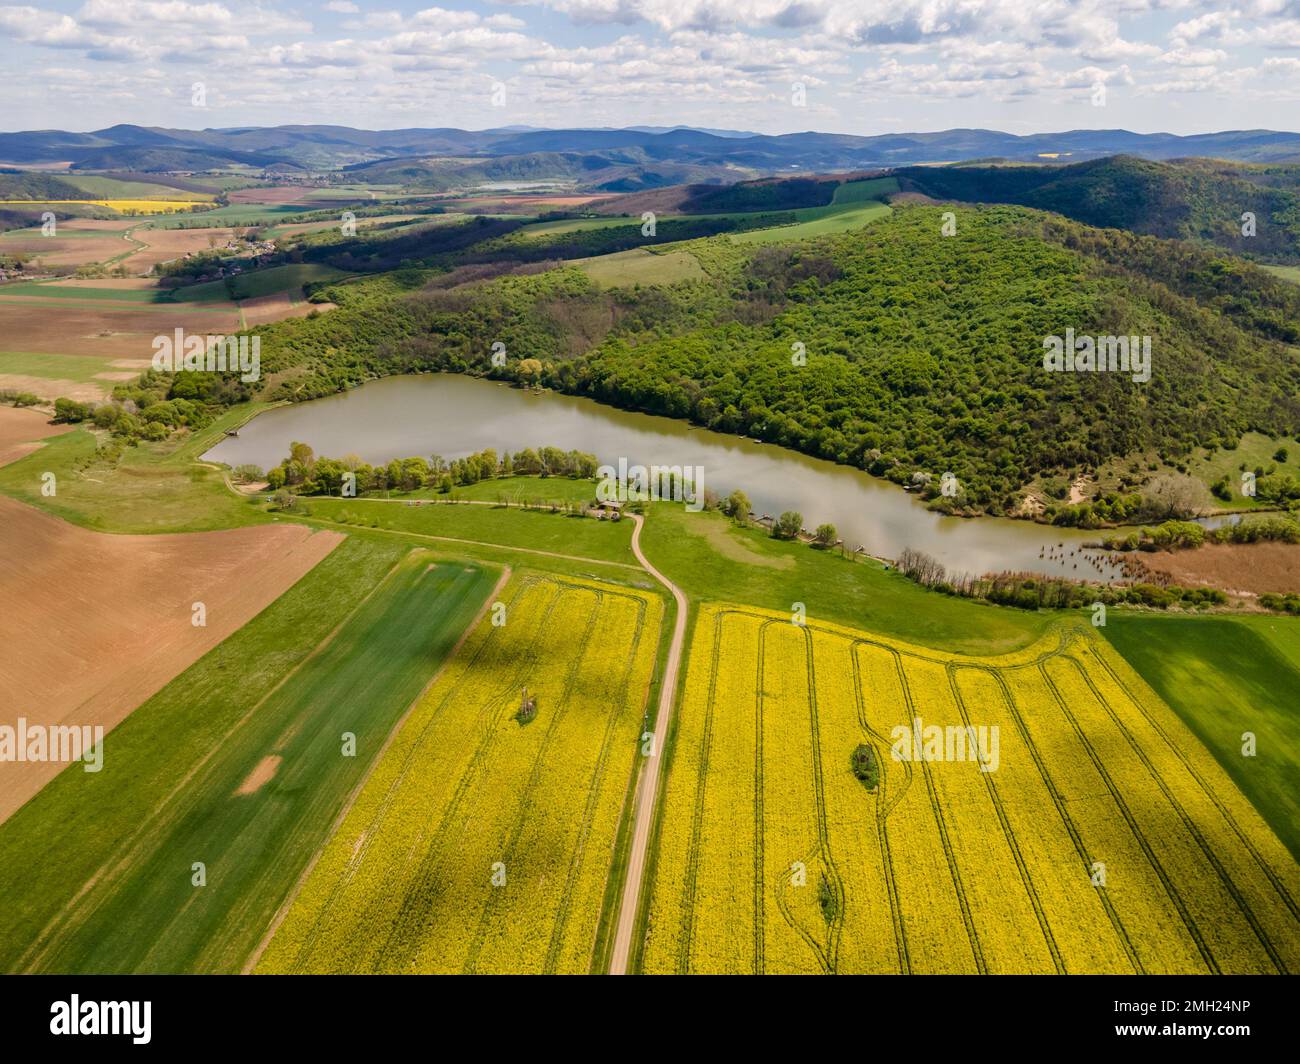 Vue aérienne d'un champ de colza jaune au pied d'un réservoir, Magyarnándor, Hongrie Banque D'Images